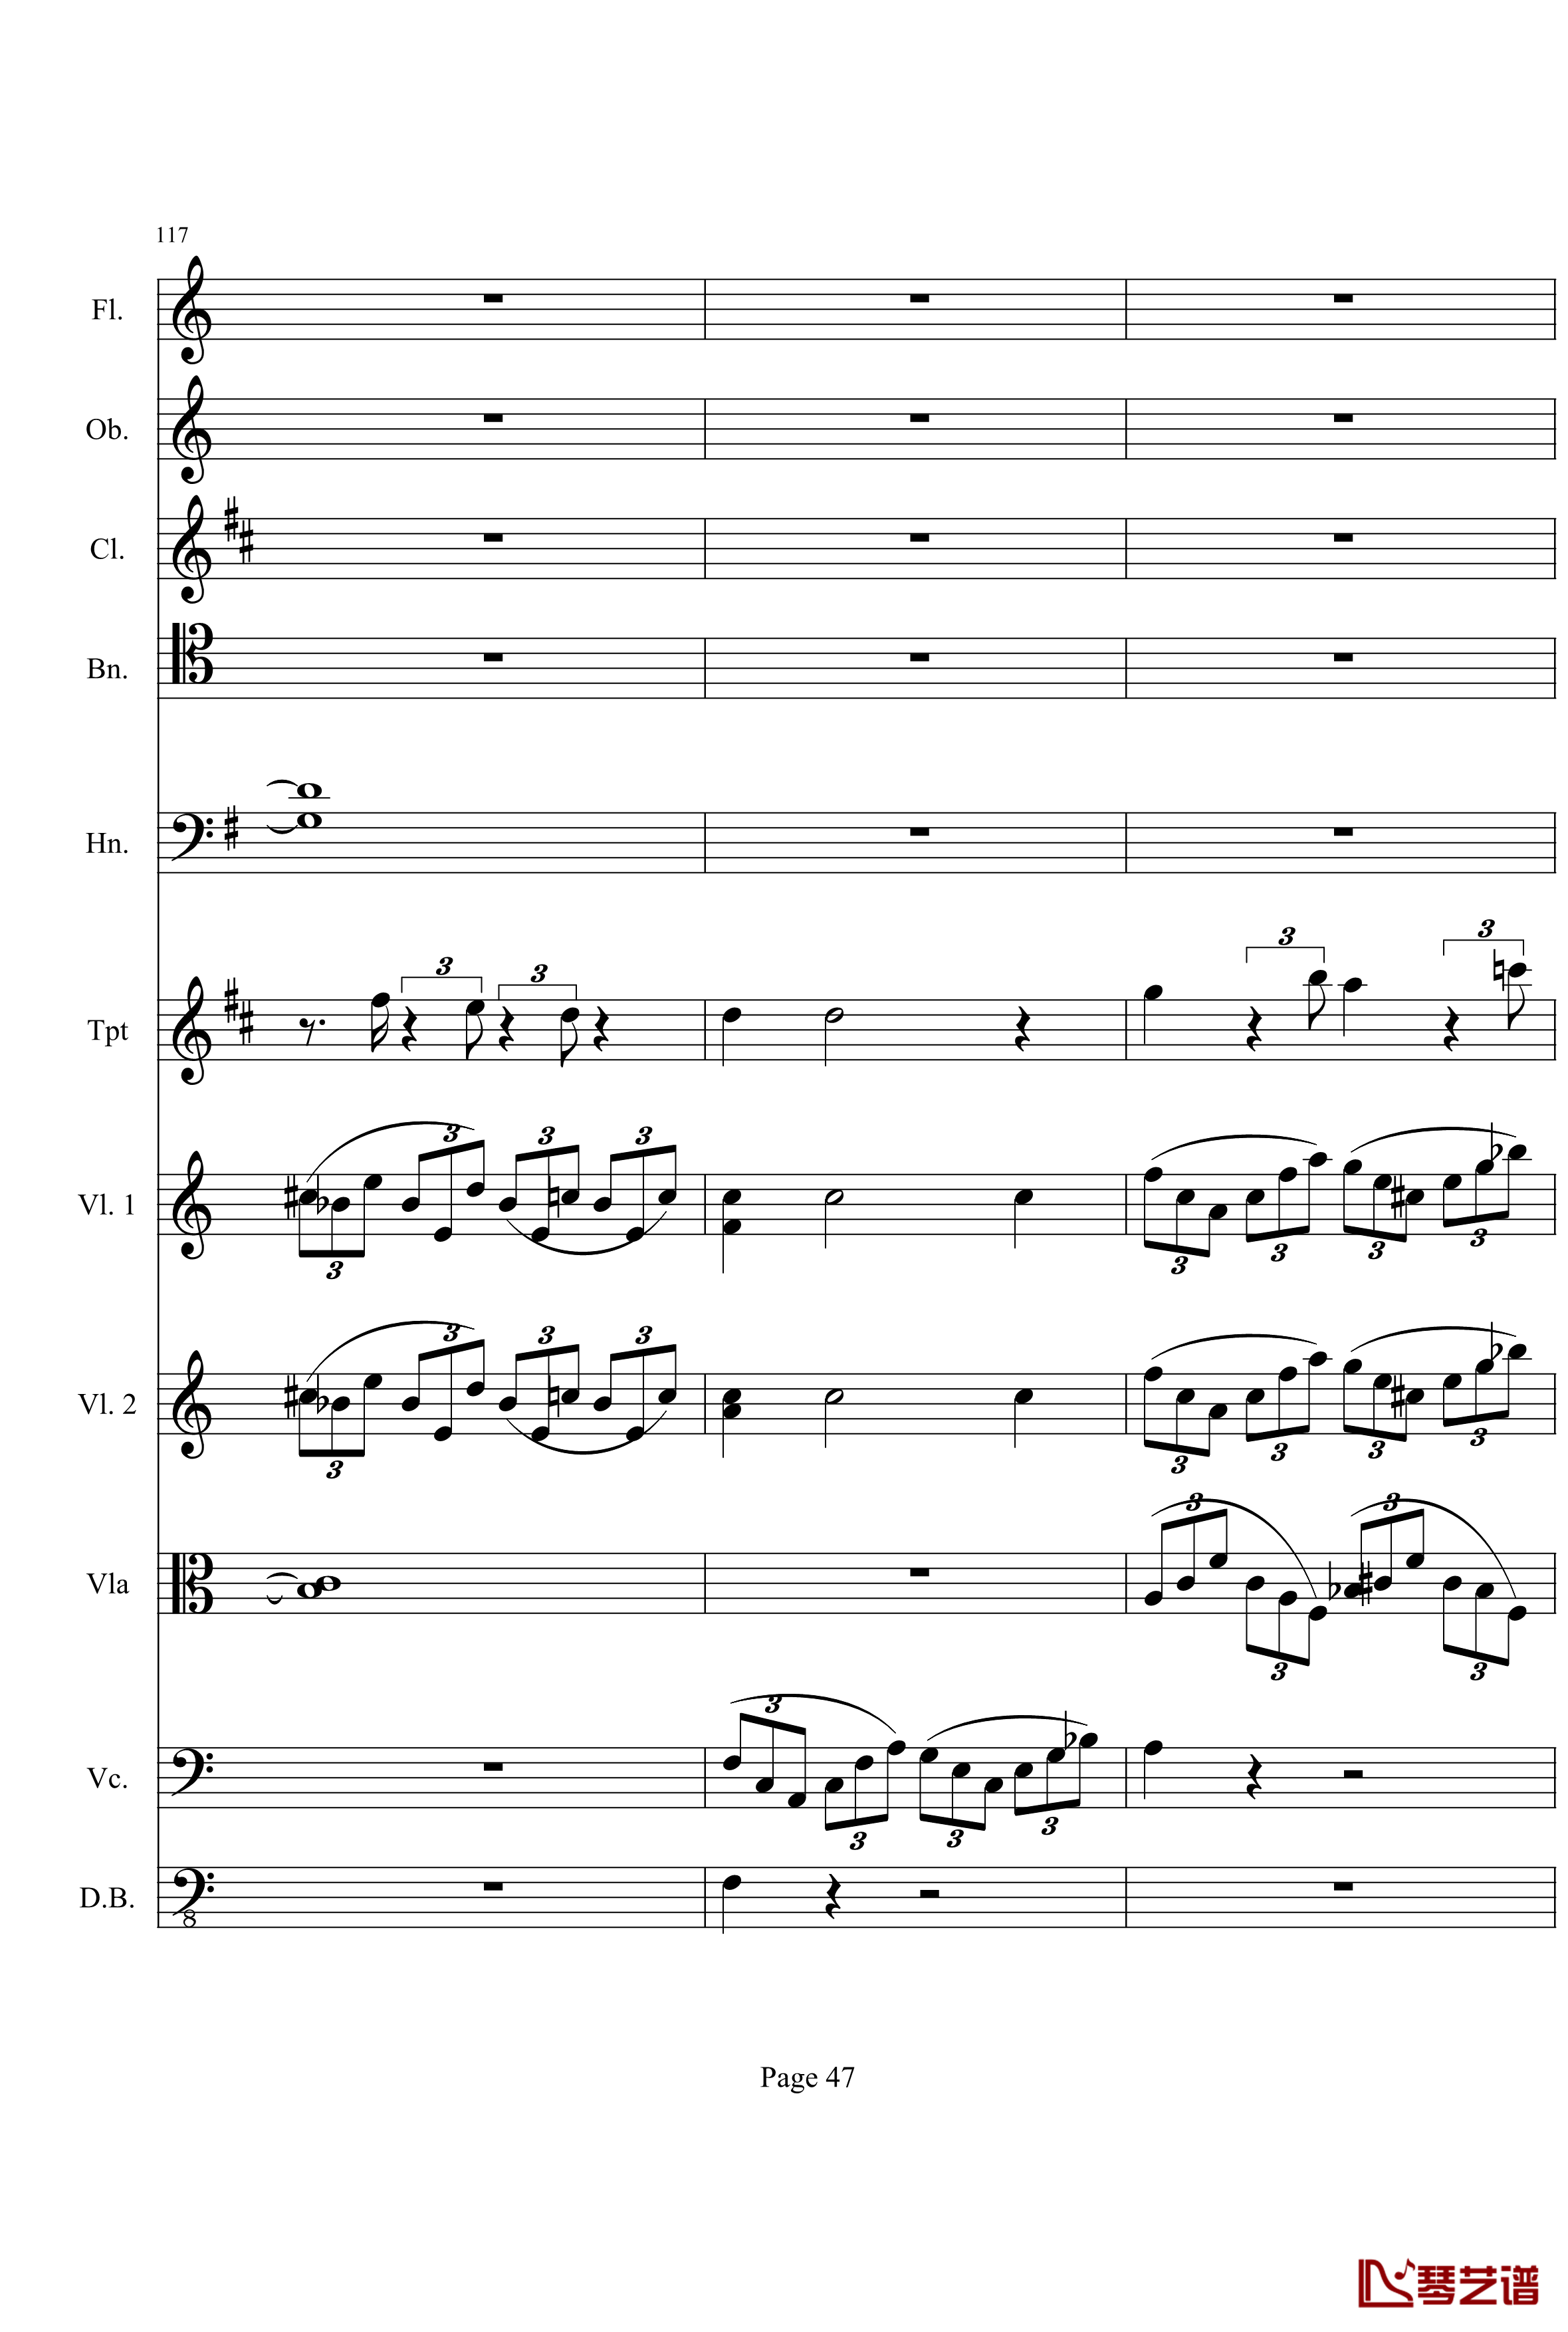 奏鸣曲之交响钢琴谱-第21-Ⅰ-贝多芬-beethoven47